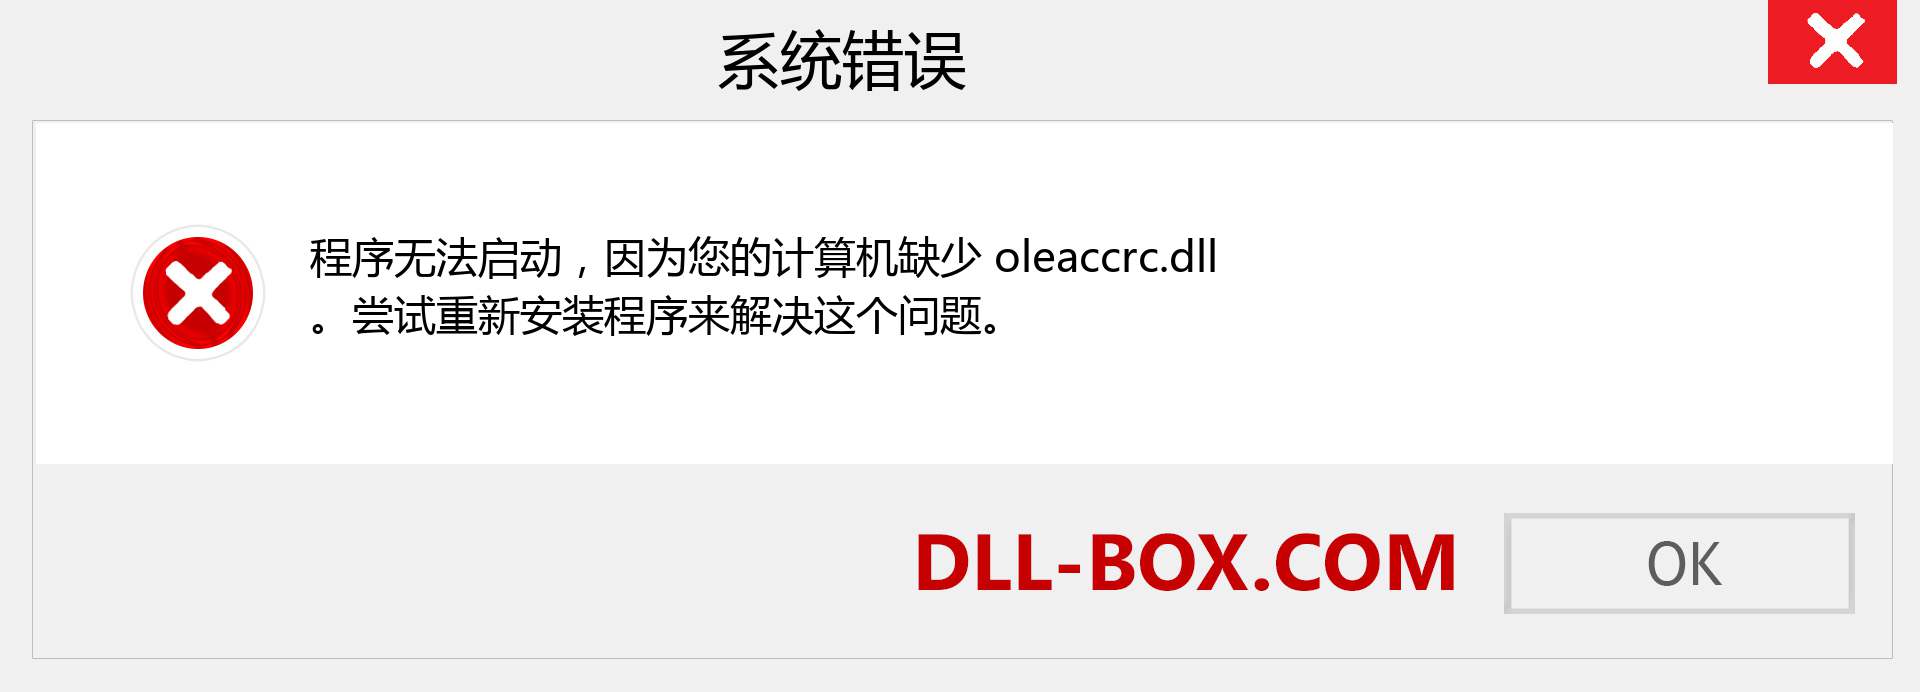 oleaccrc.dll 文件丢失？。 适用于 Windows 7、8、10 的下载 - 修复 Windows、照片、图像上的 oleaccrc dll 丢失错误